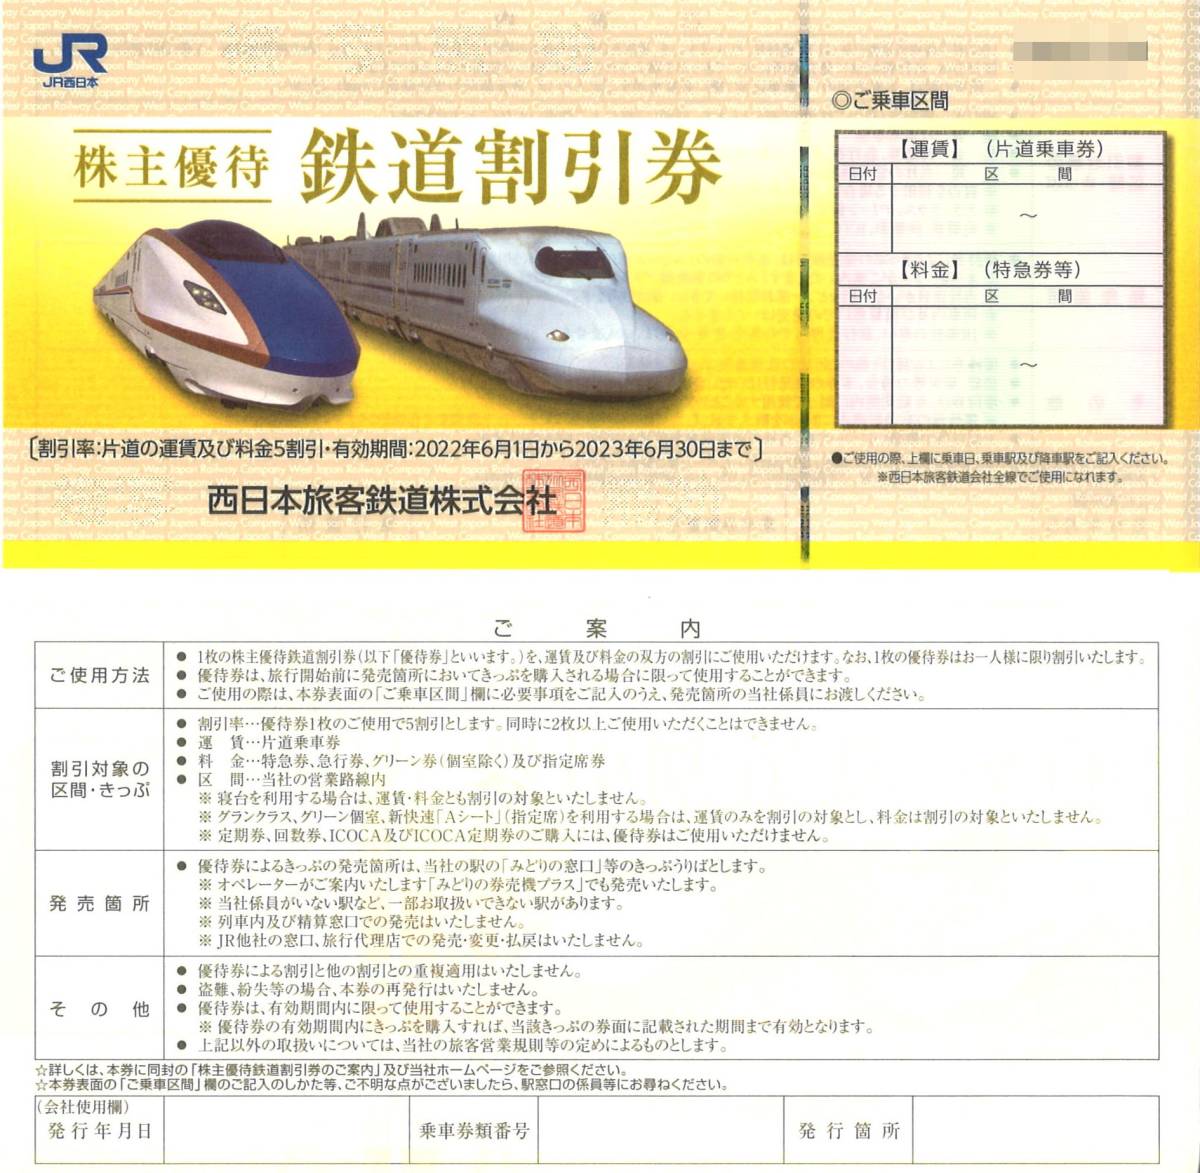 返品送料無料 JR西日本の株主優待鉄道割引券 solines.ec